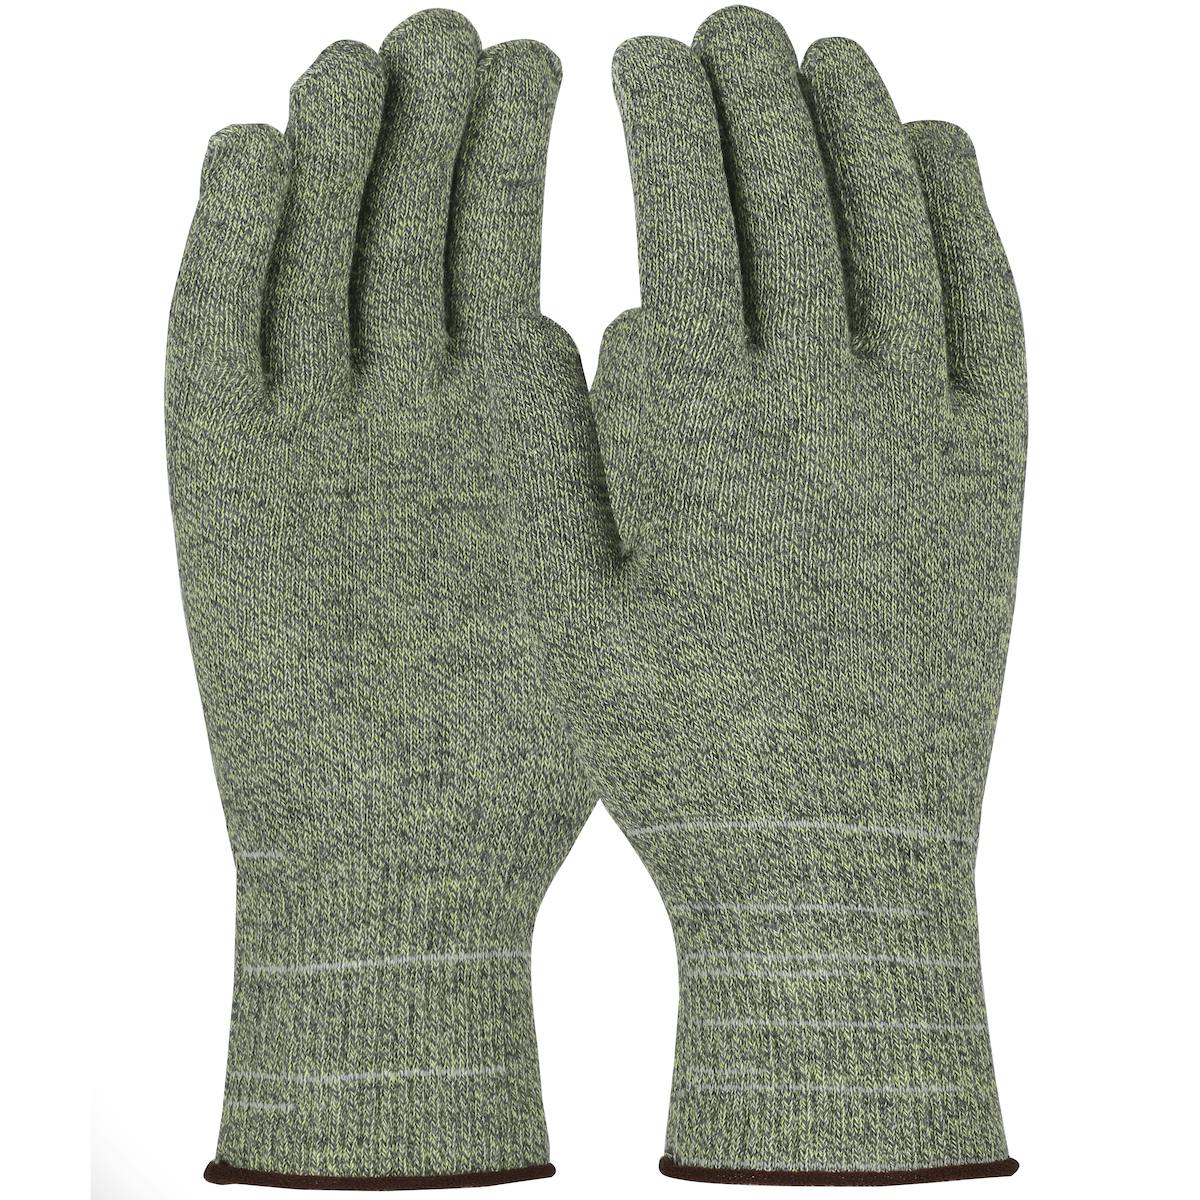 Kut Gard® Seamless Knit ATA® Hide-Away™ / Elastane Blended Glove - Light Weight (M530)